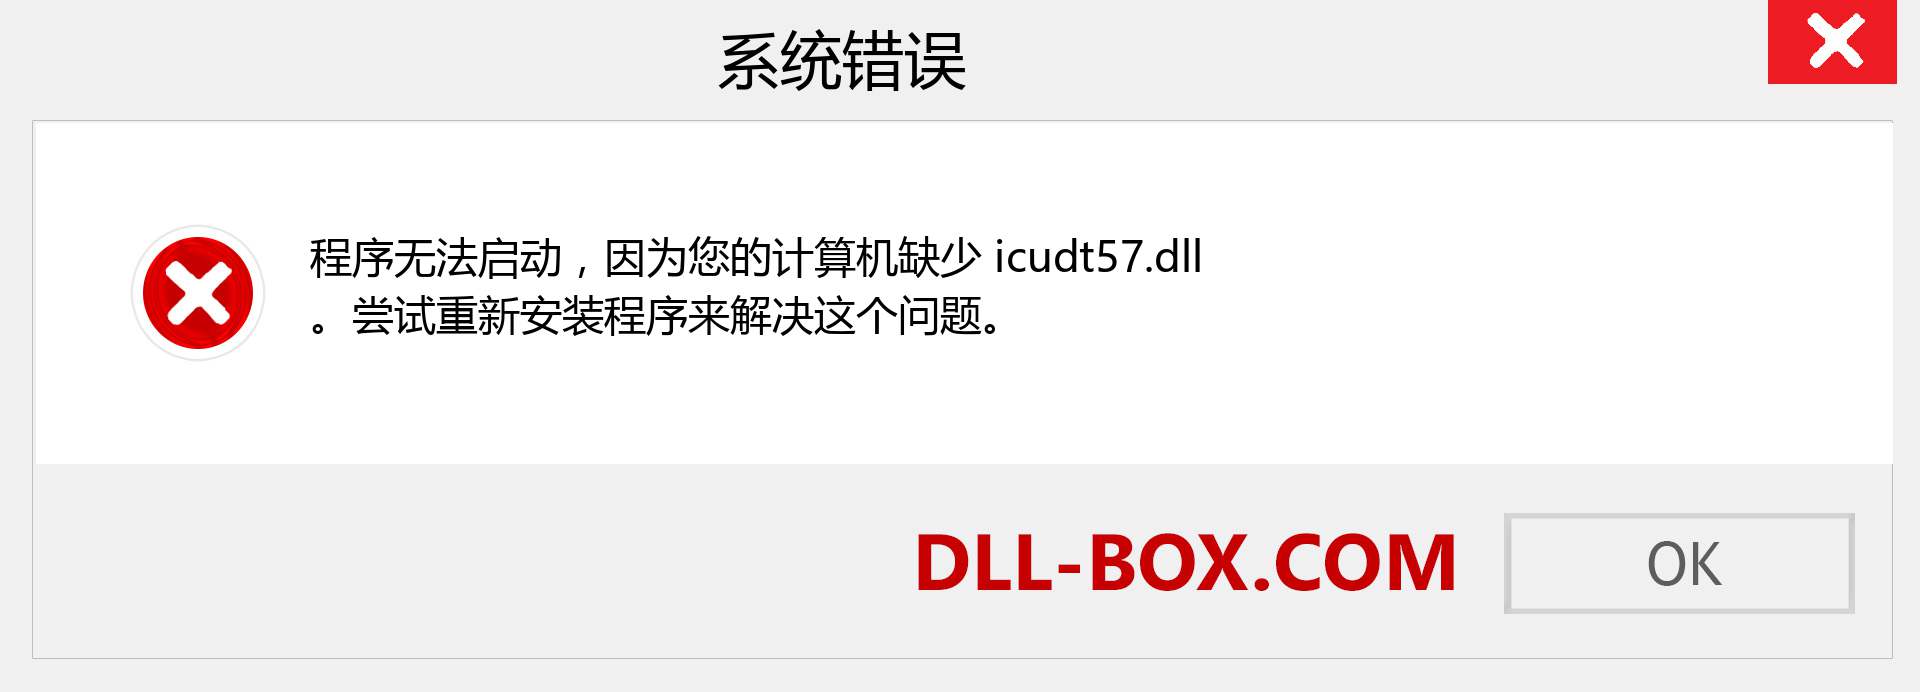 icudt57.dll 文件丢失？。 适用于 Windows 7、8、10 的下载 - 修复 Windows、照片、图像上的 icudt57 dll 丢失错误